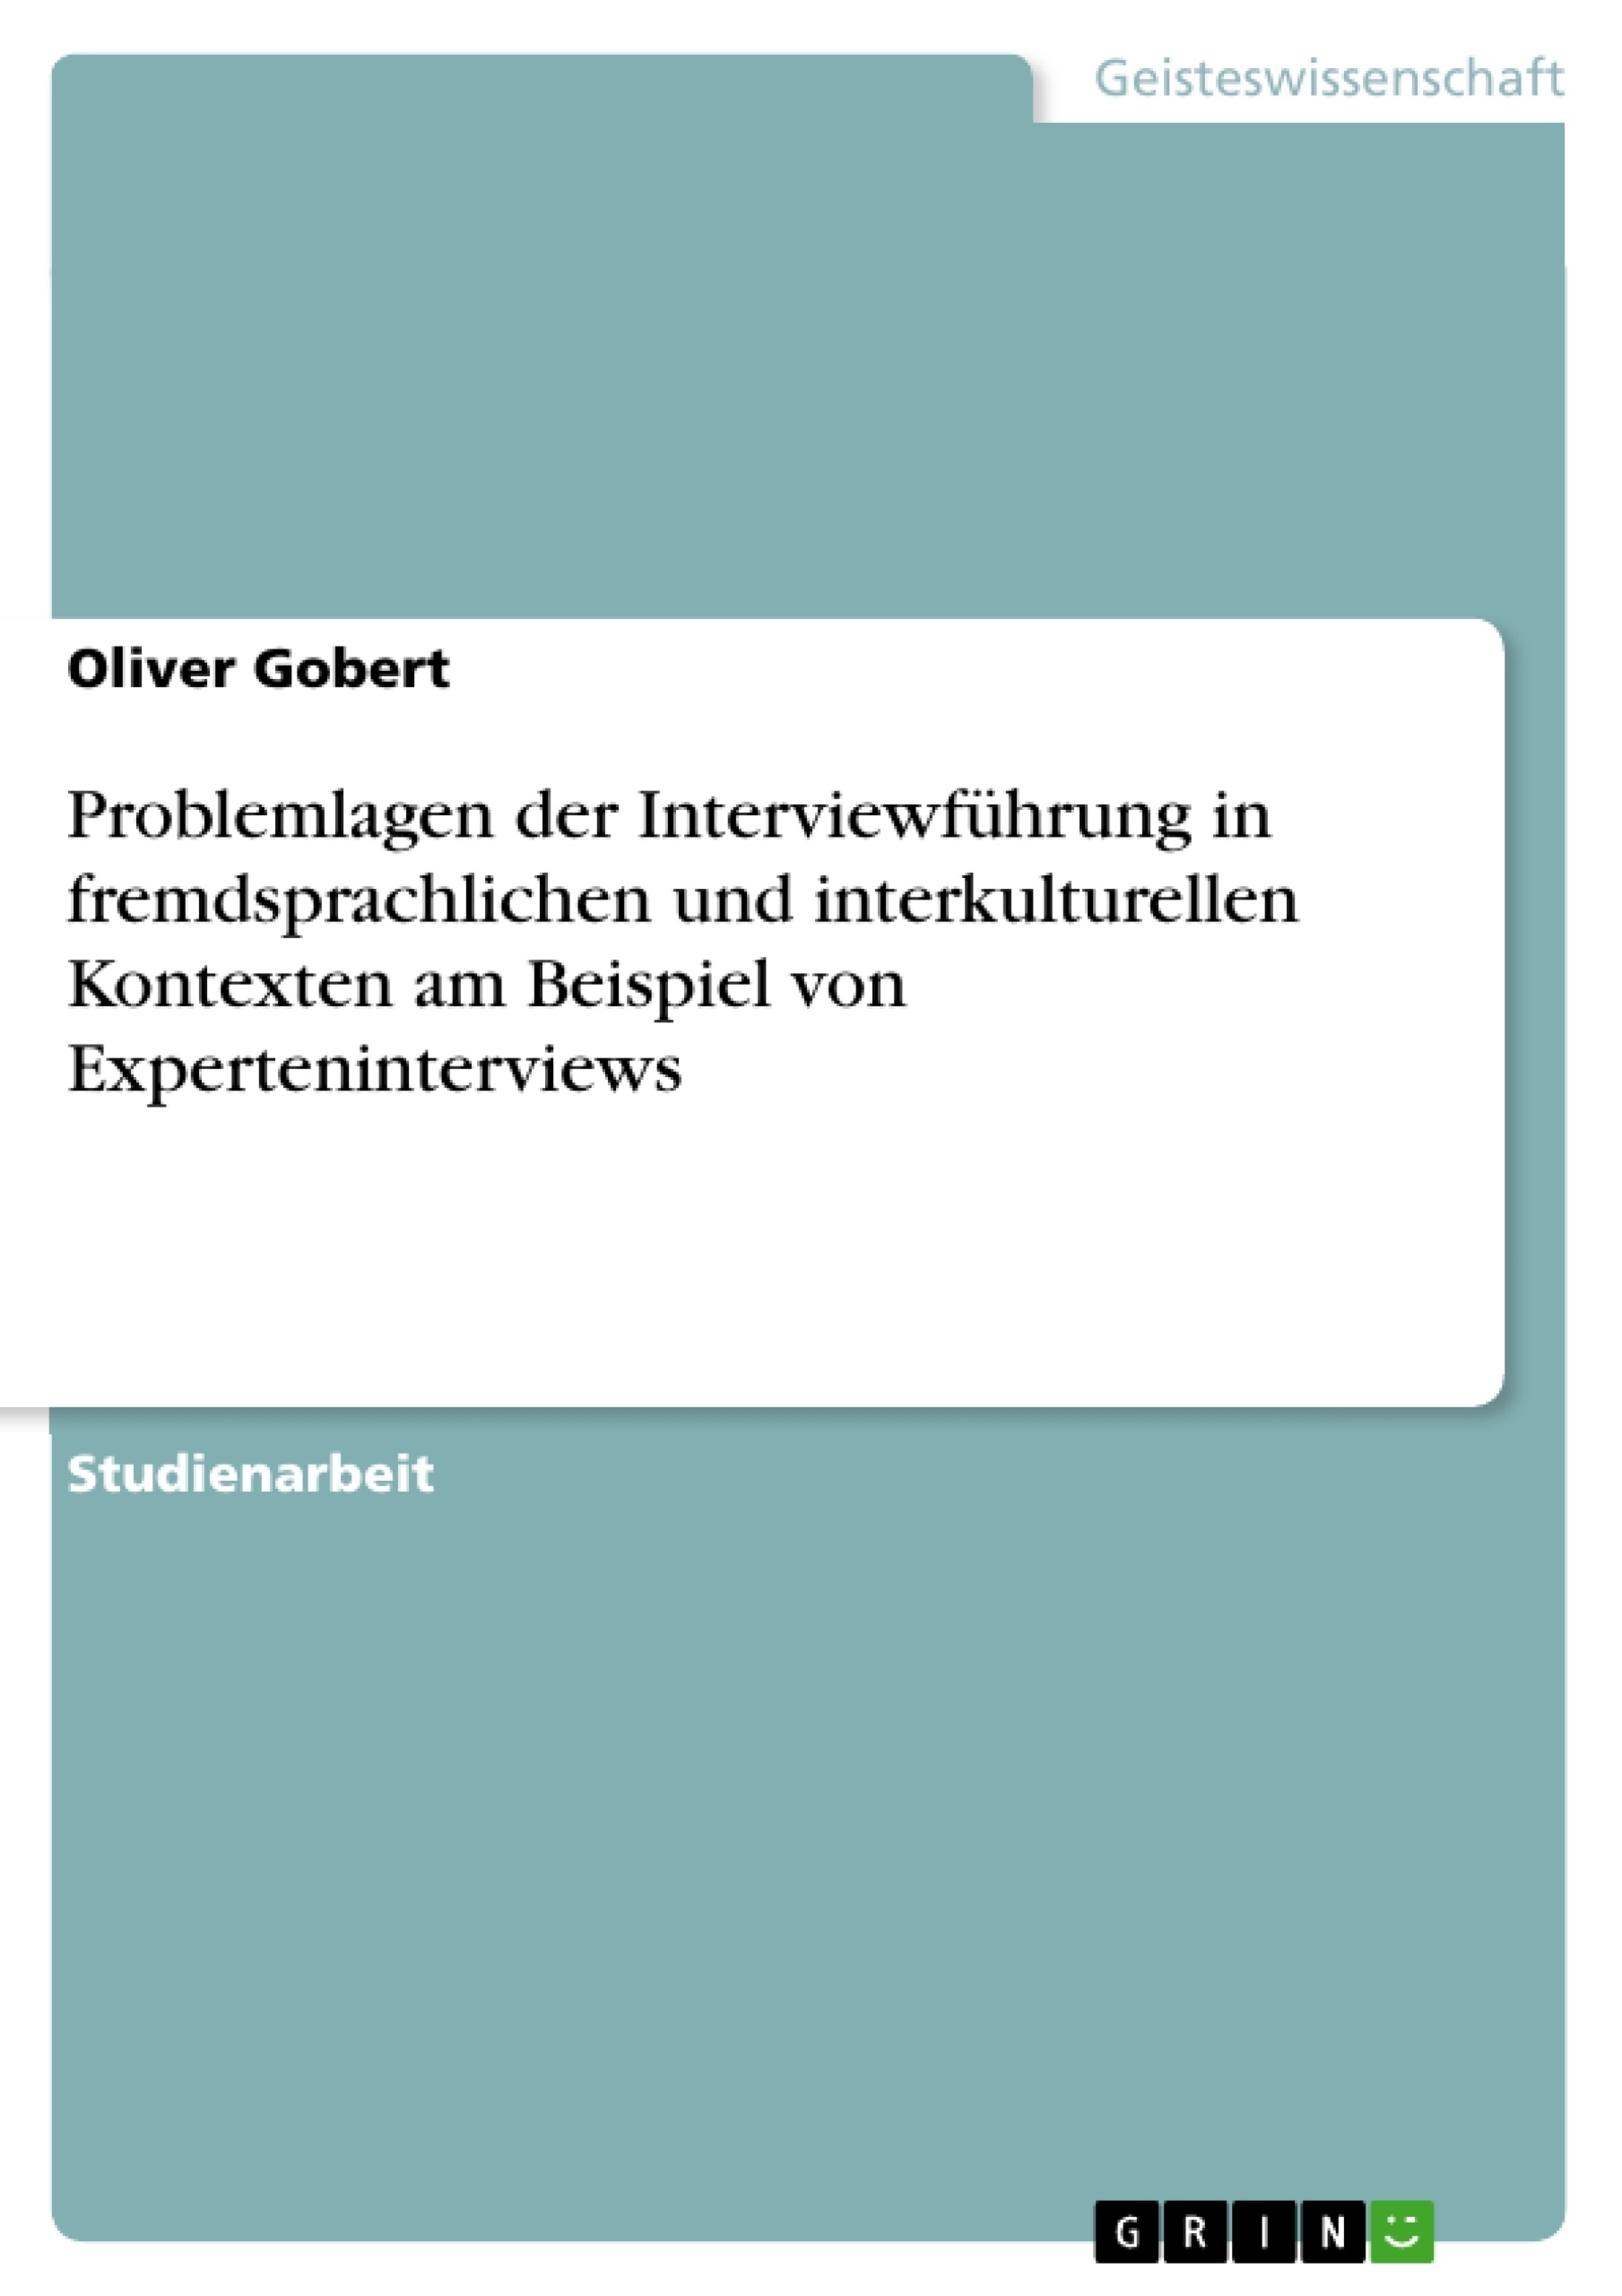 Title: Problemlagen der Interviewführung in fremdsprachlichen und interkulturellen Kontexten am Beispiel von Experteninterviews